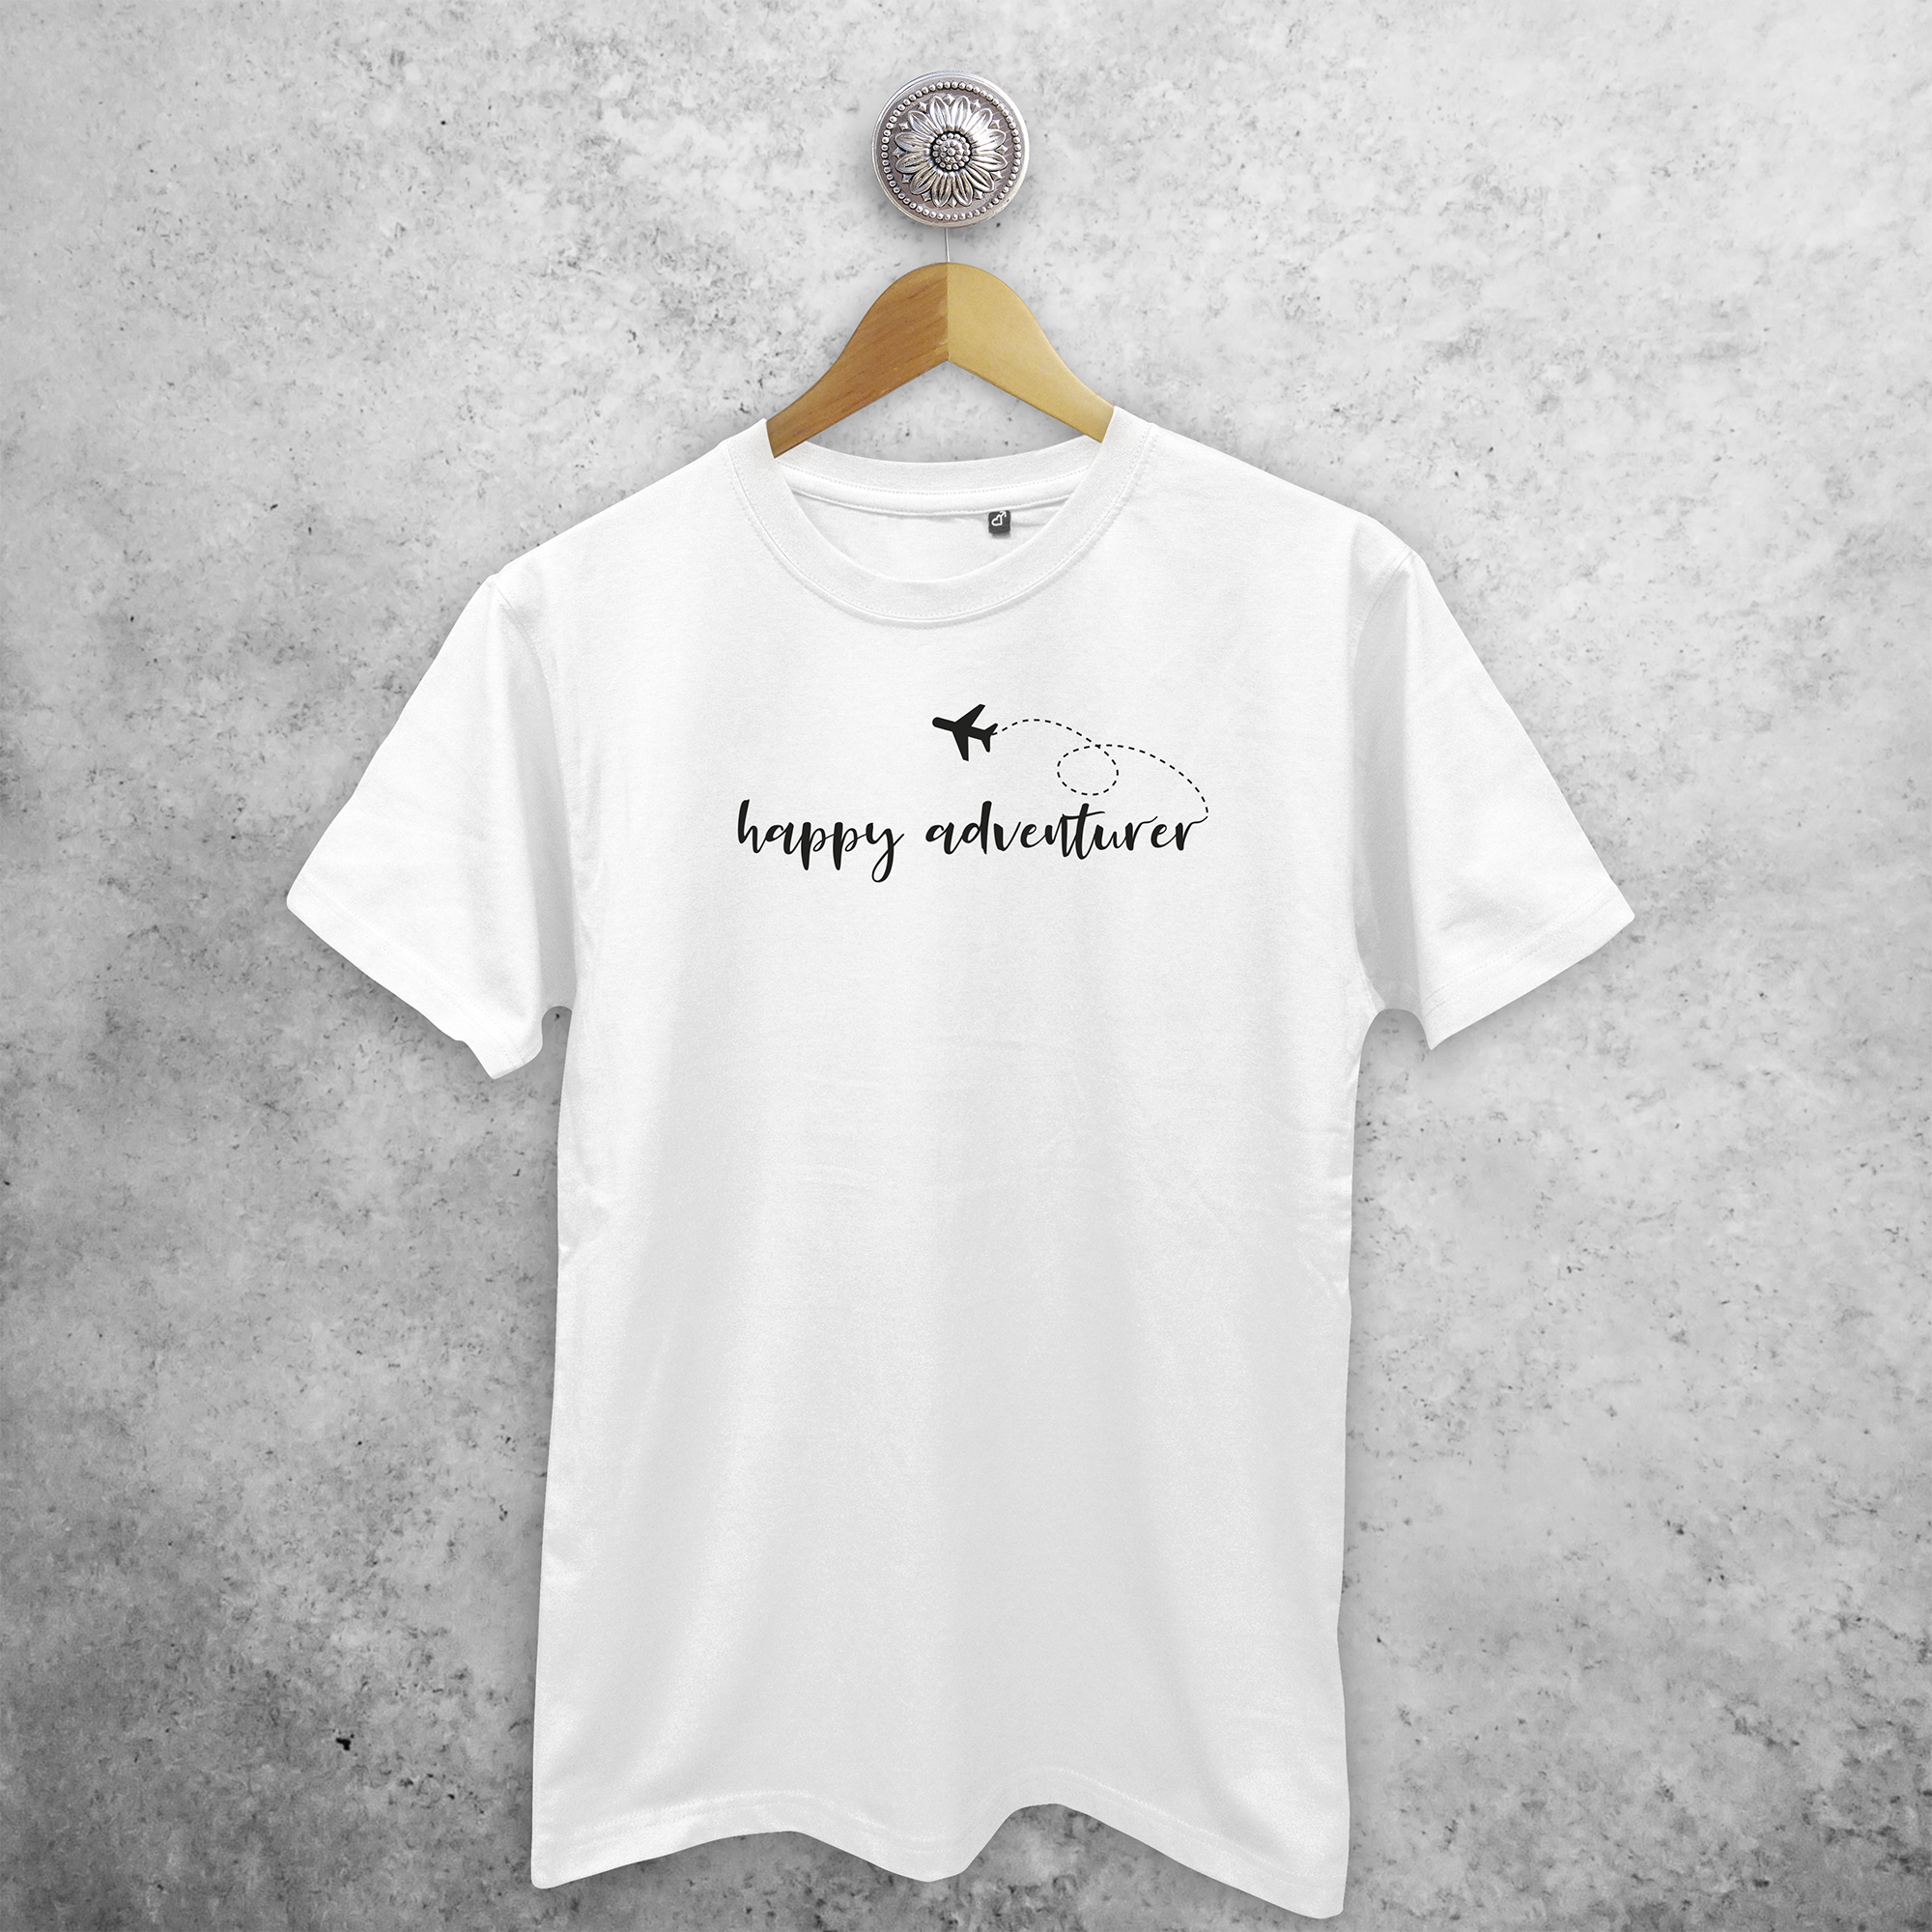 'Happy adventurer' volwassene shirt